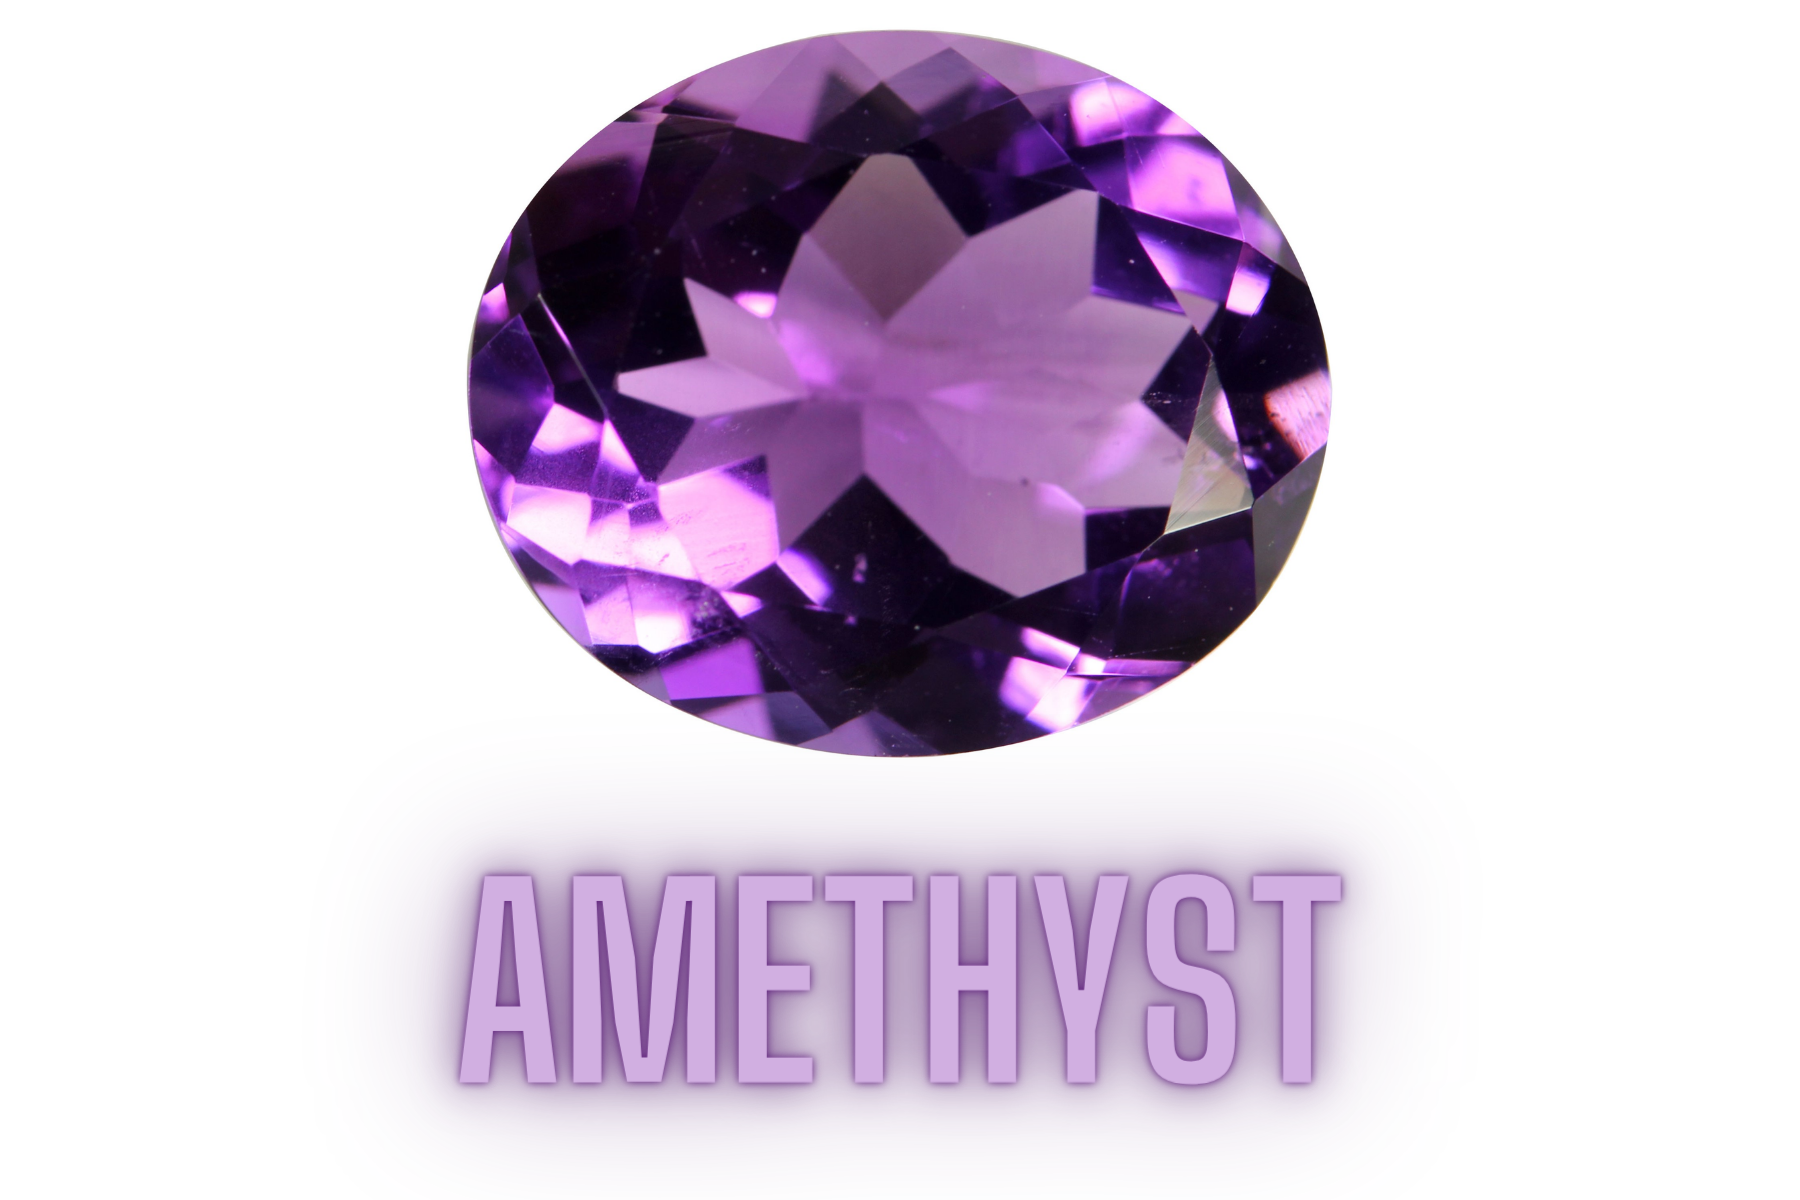 Oblong purple amethyst stone